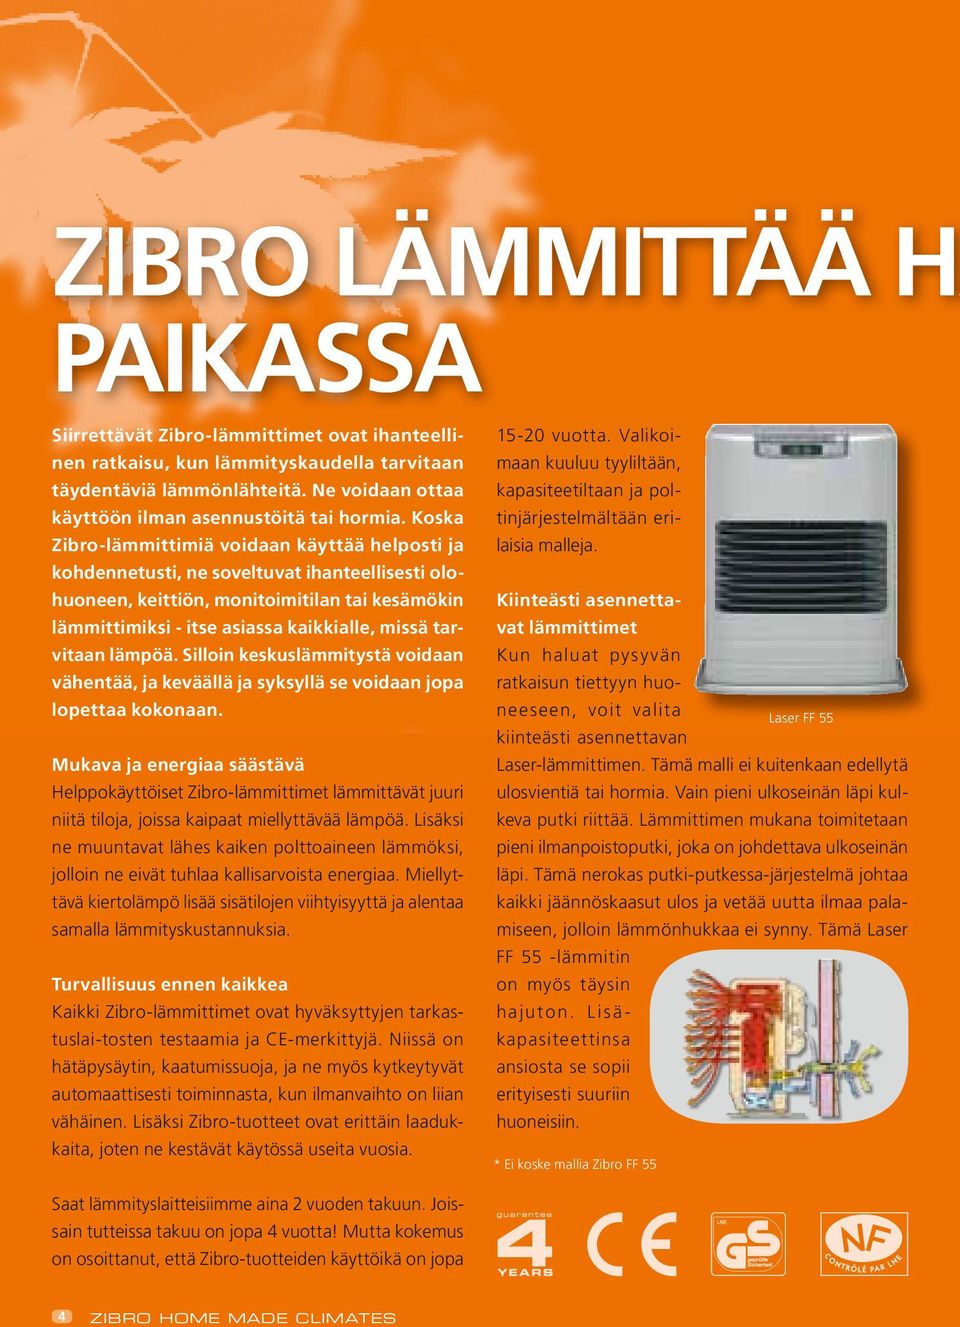 Koska Zibro-lämmittimiä voidaan käyttää helposti ja kohdennetusti, ne soveltuvat ihanteellisesti olohuoneen, keittiön, monitoimitilan tai kesämökin lämmittimiksi - itse asiassa kaikkialle, missä